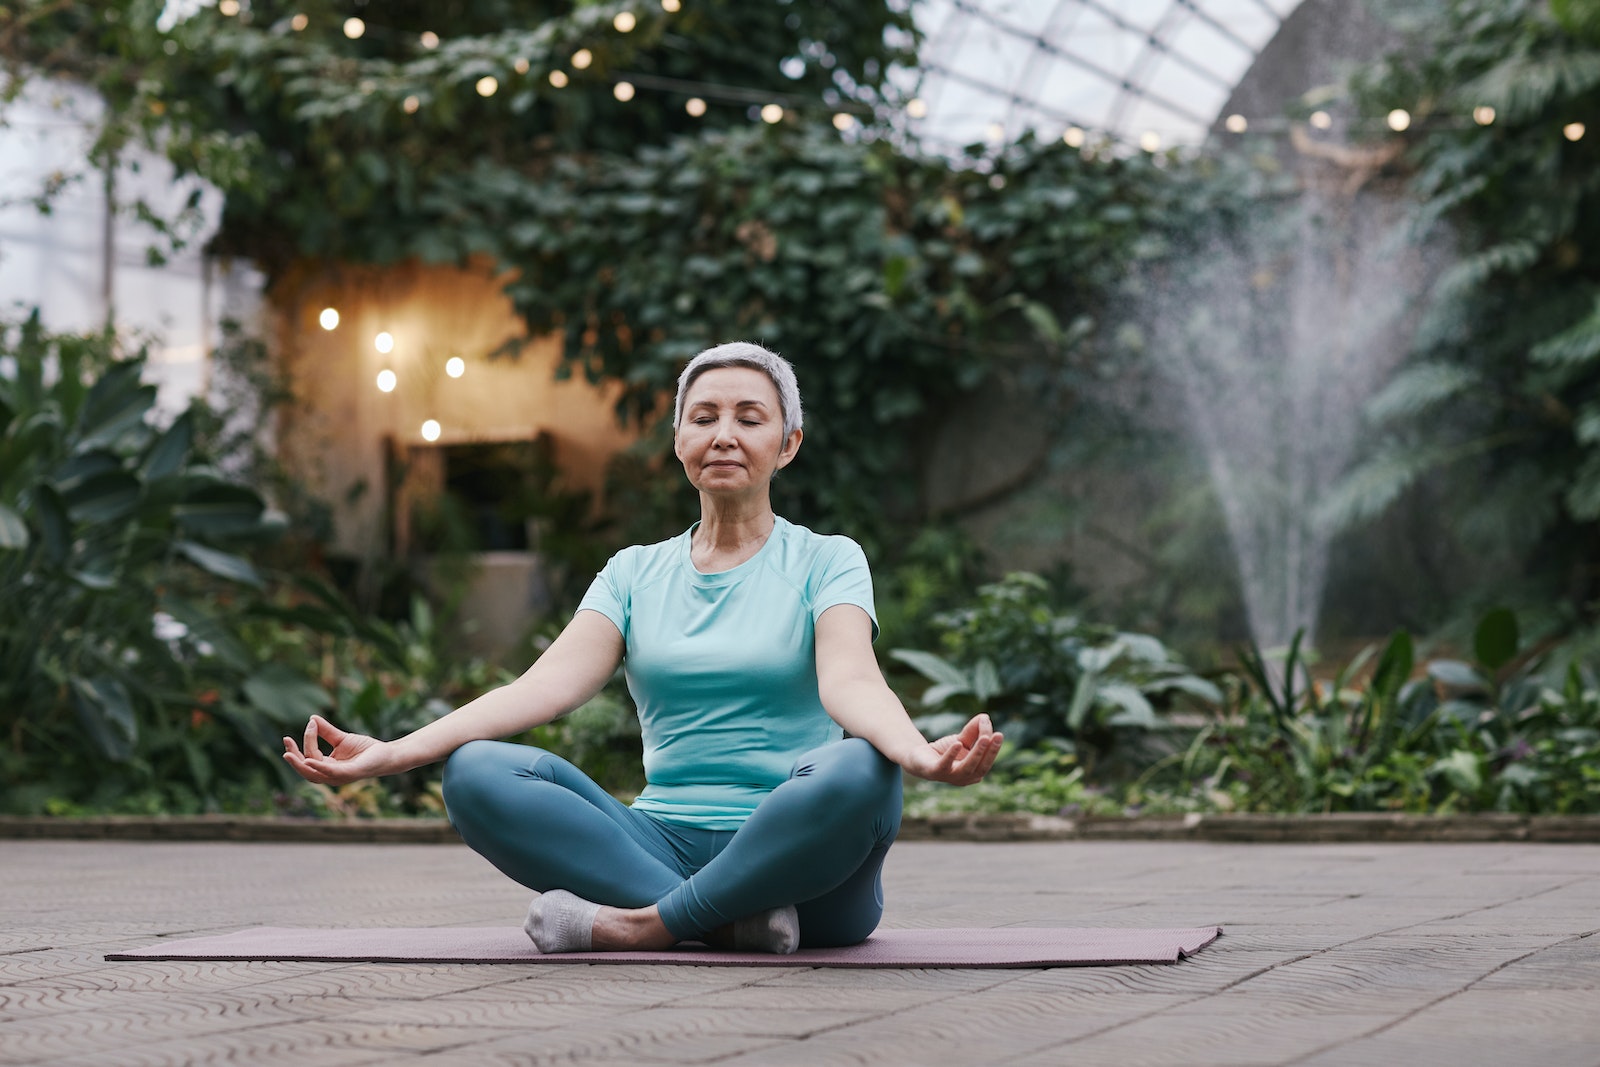 Les seniors peuvent profiter des bienfaits du yoga pour améliorer leur santé et leur bien-être. Découvrez comment vous lancer dans la pratique du yoga aujourd’hui!